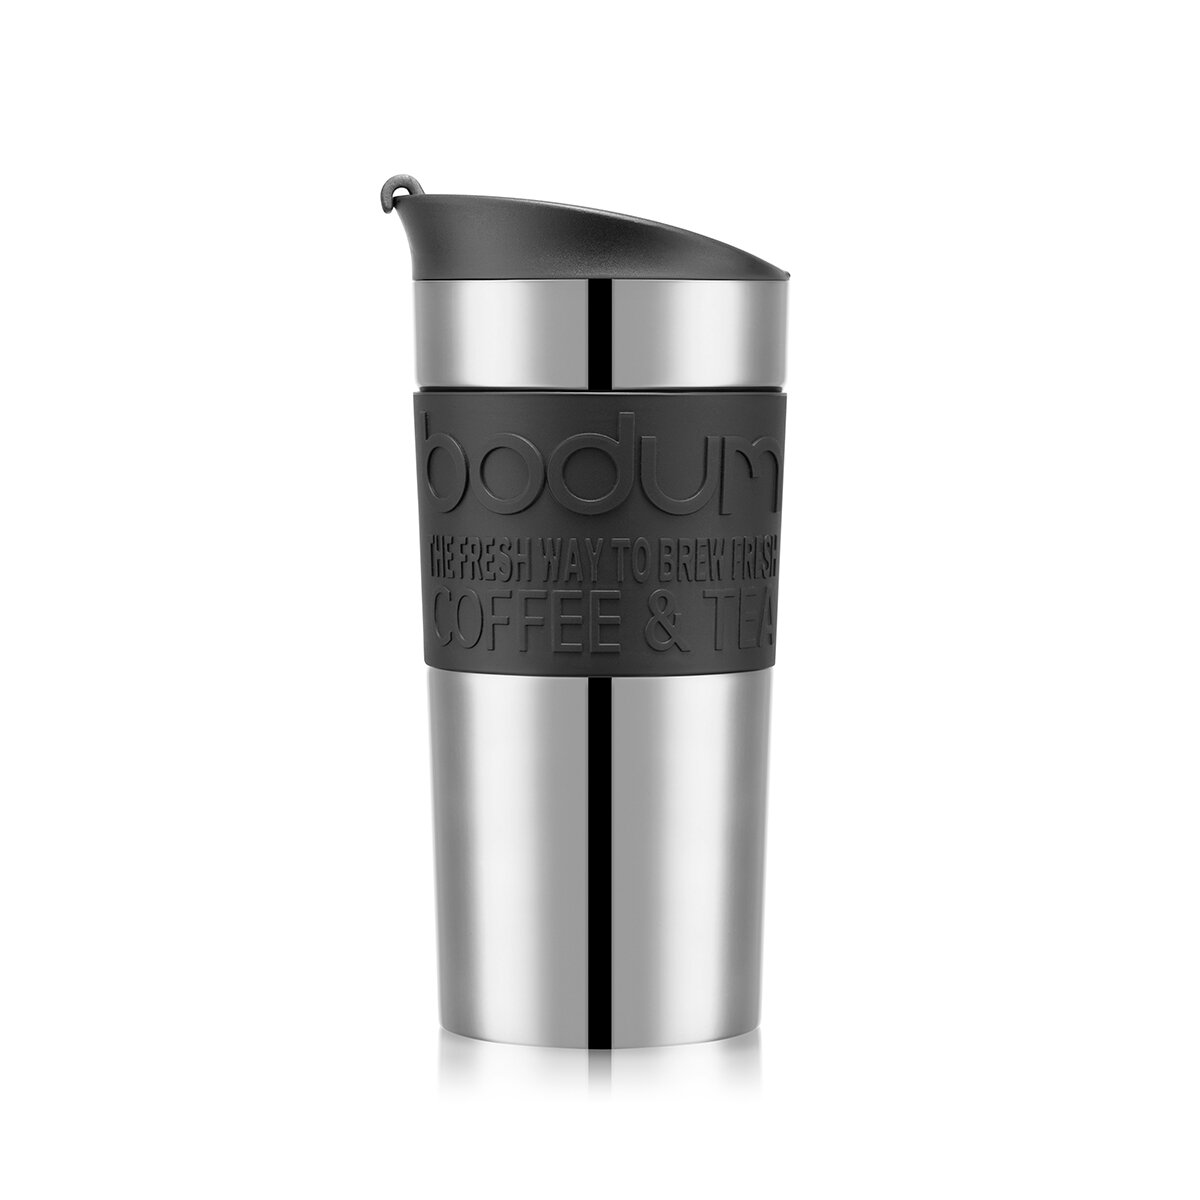 Bodum Stainless Steel Travel Mug (0.35L), 2 Pack - Black & White